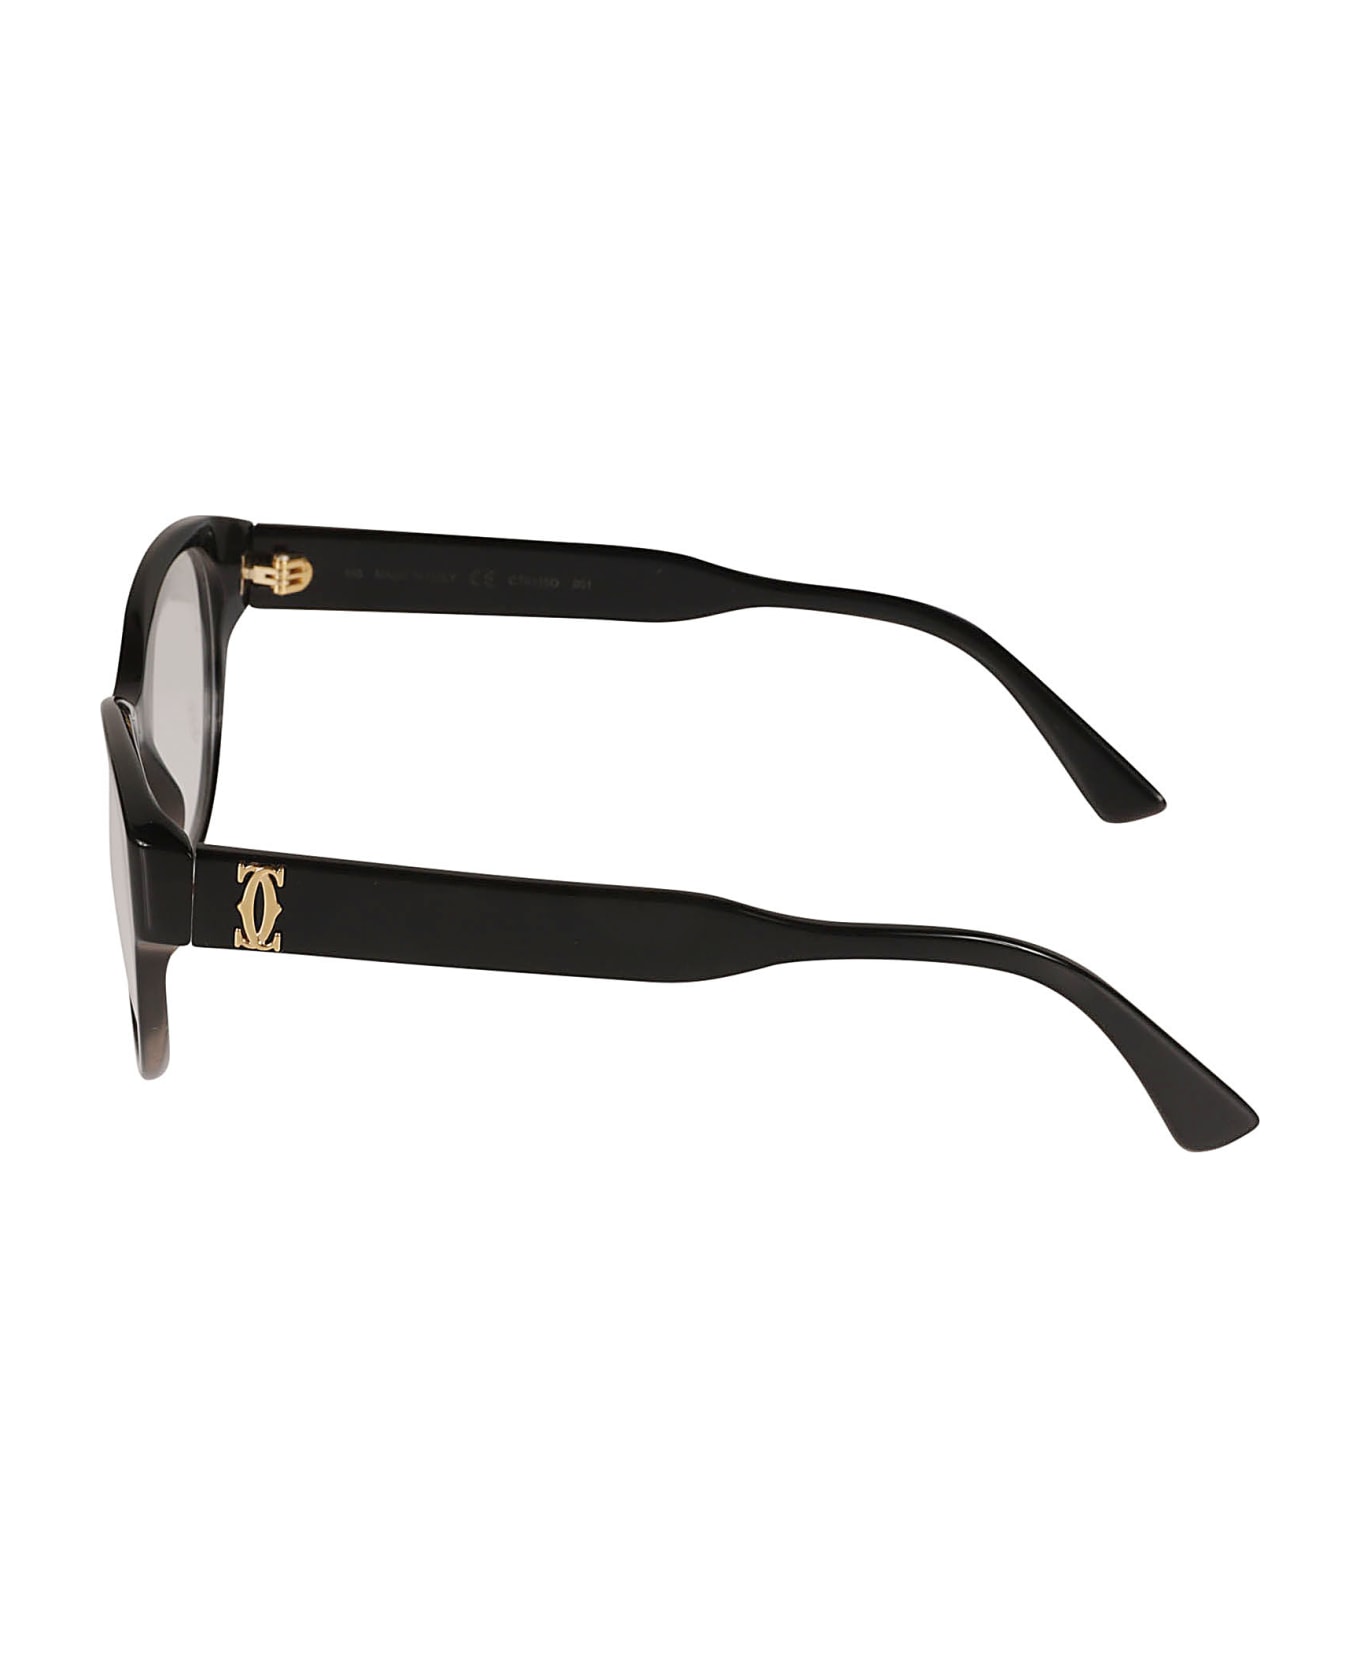 Cartier Eyewear Signature Double C Detail Glasses - 001 black black transpare